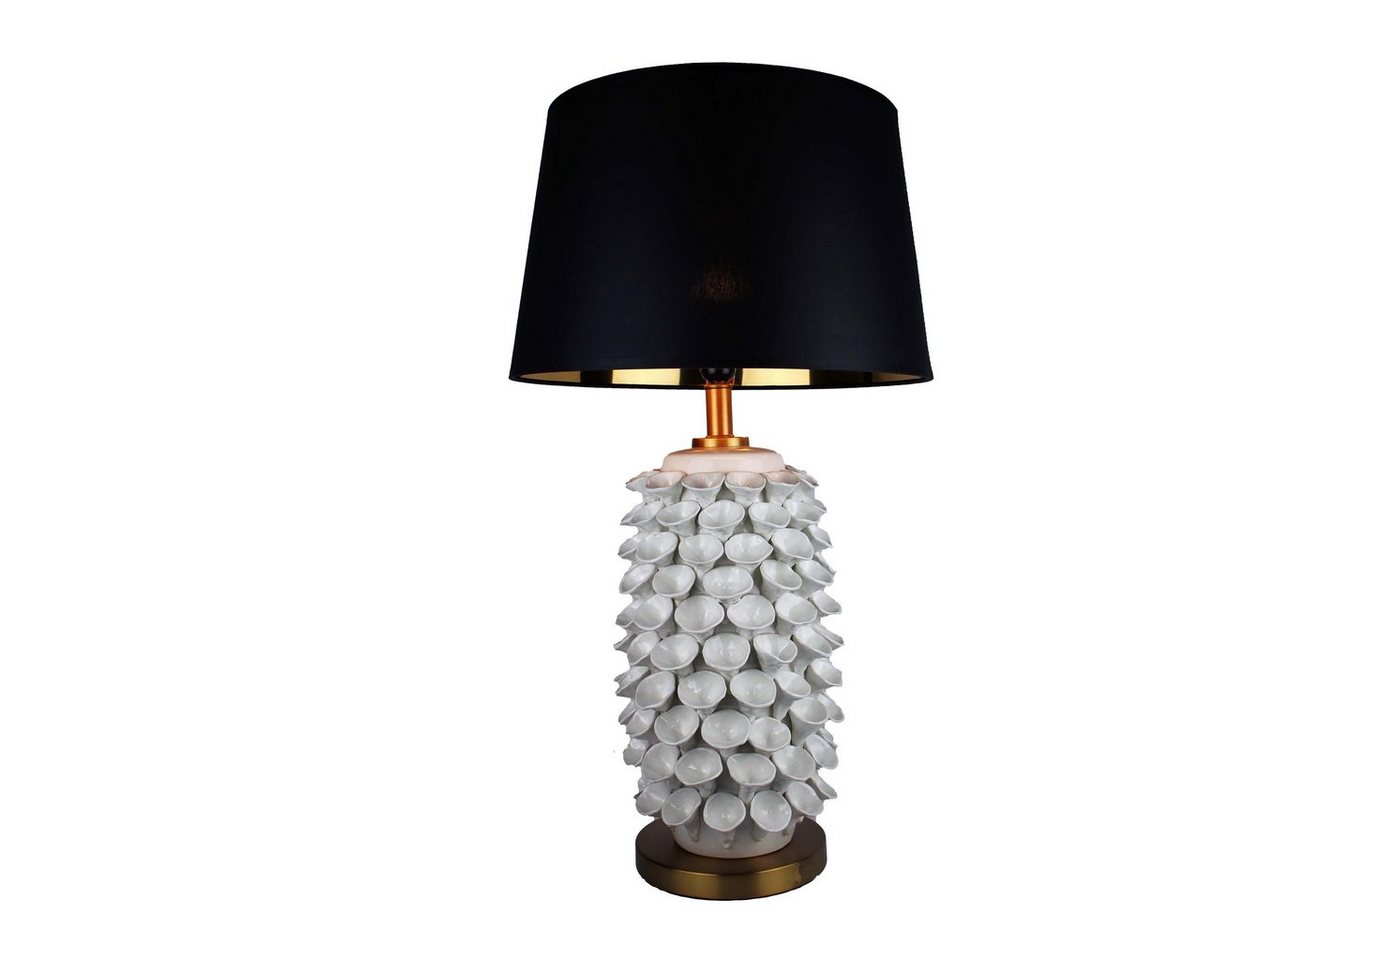 Cosy Home Ideas Tischleuchte Tischlampe in Keramik weiß mit Lampenschirm weiß, ohne Leuchtmittel, warmweiß, für eine angenehme Beleuchtung von Cosy Home Ideas